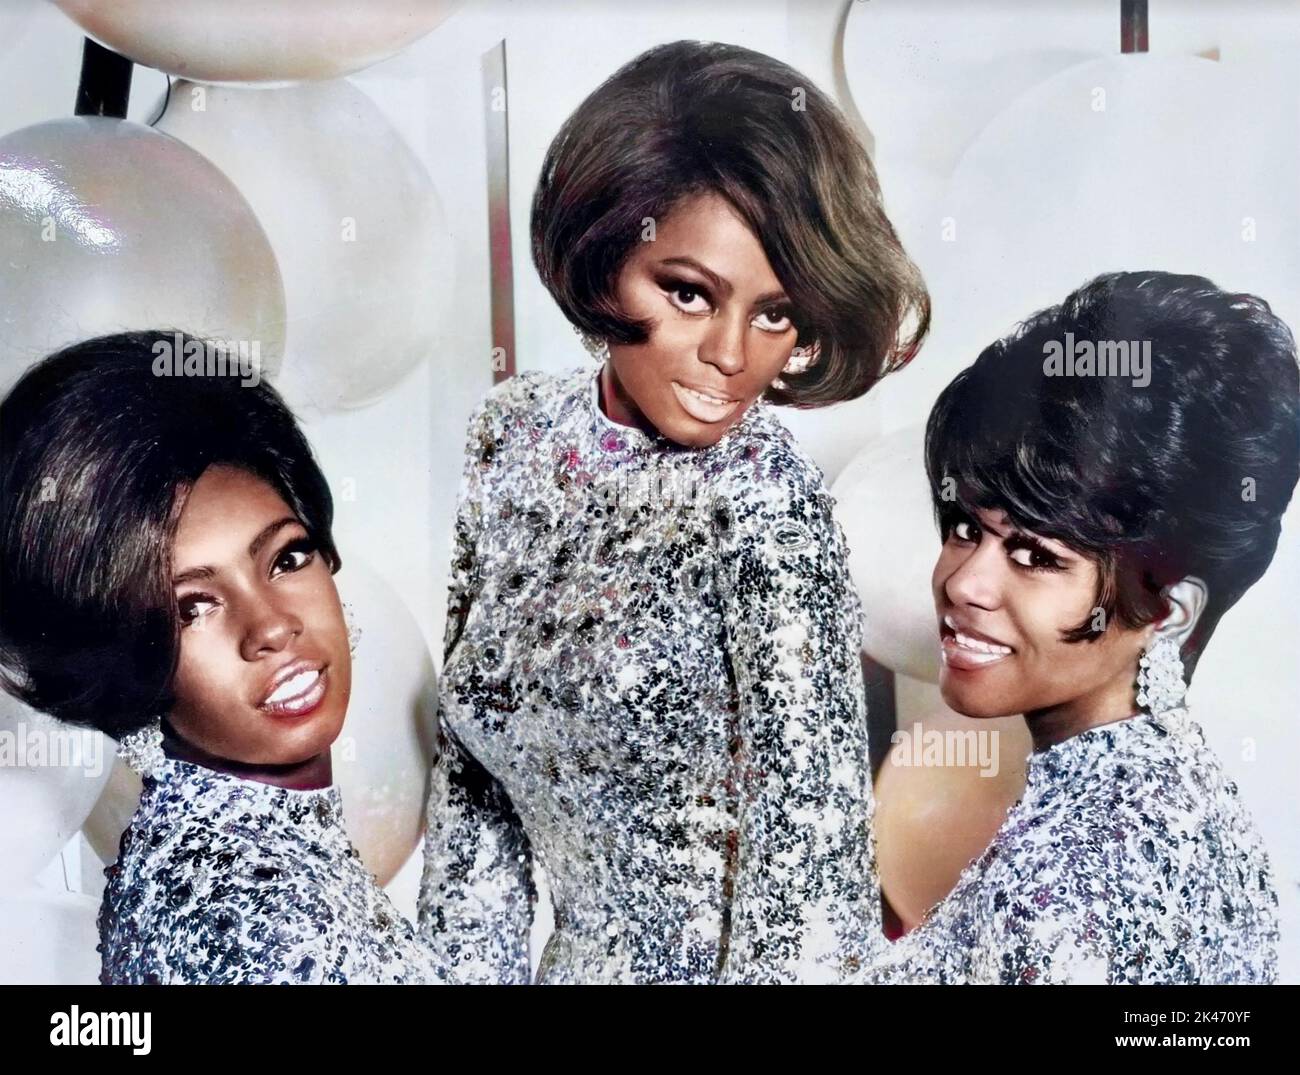 THE SUPREMES Foto promocional del trío vocal americano en 1967. De izquierda a derecha: Mary Wilson, Diana Ross, Cindy Birdsong. Foto de stock